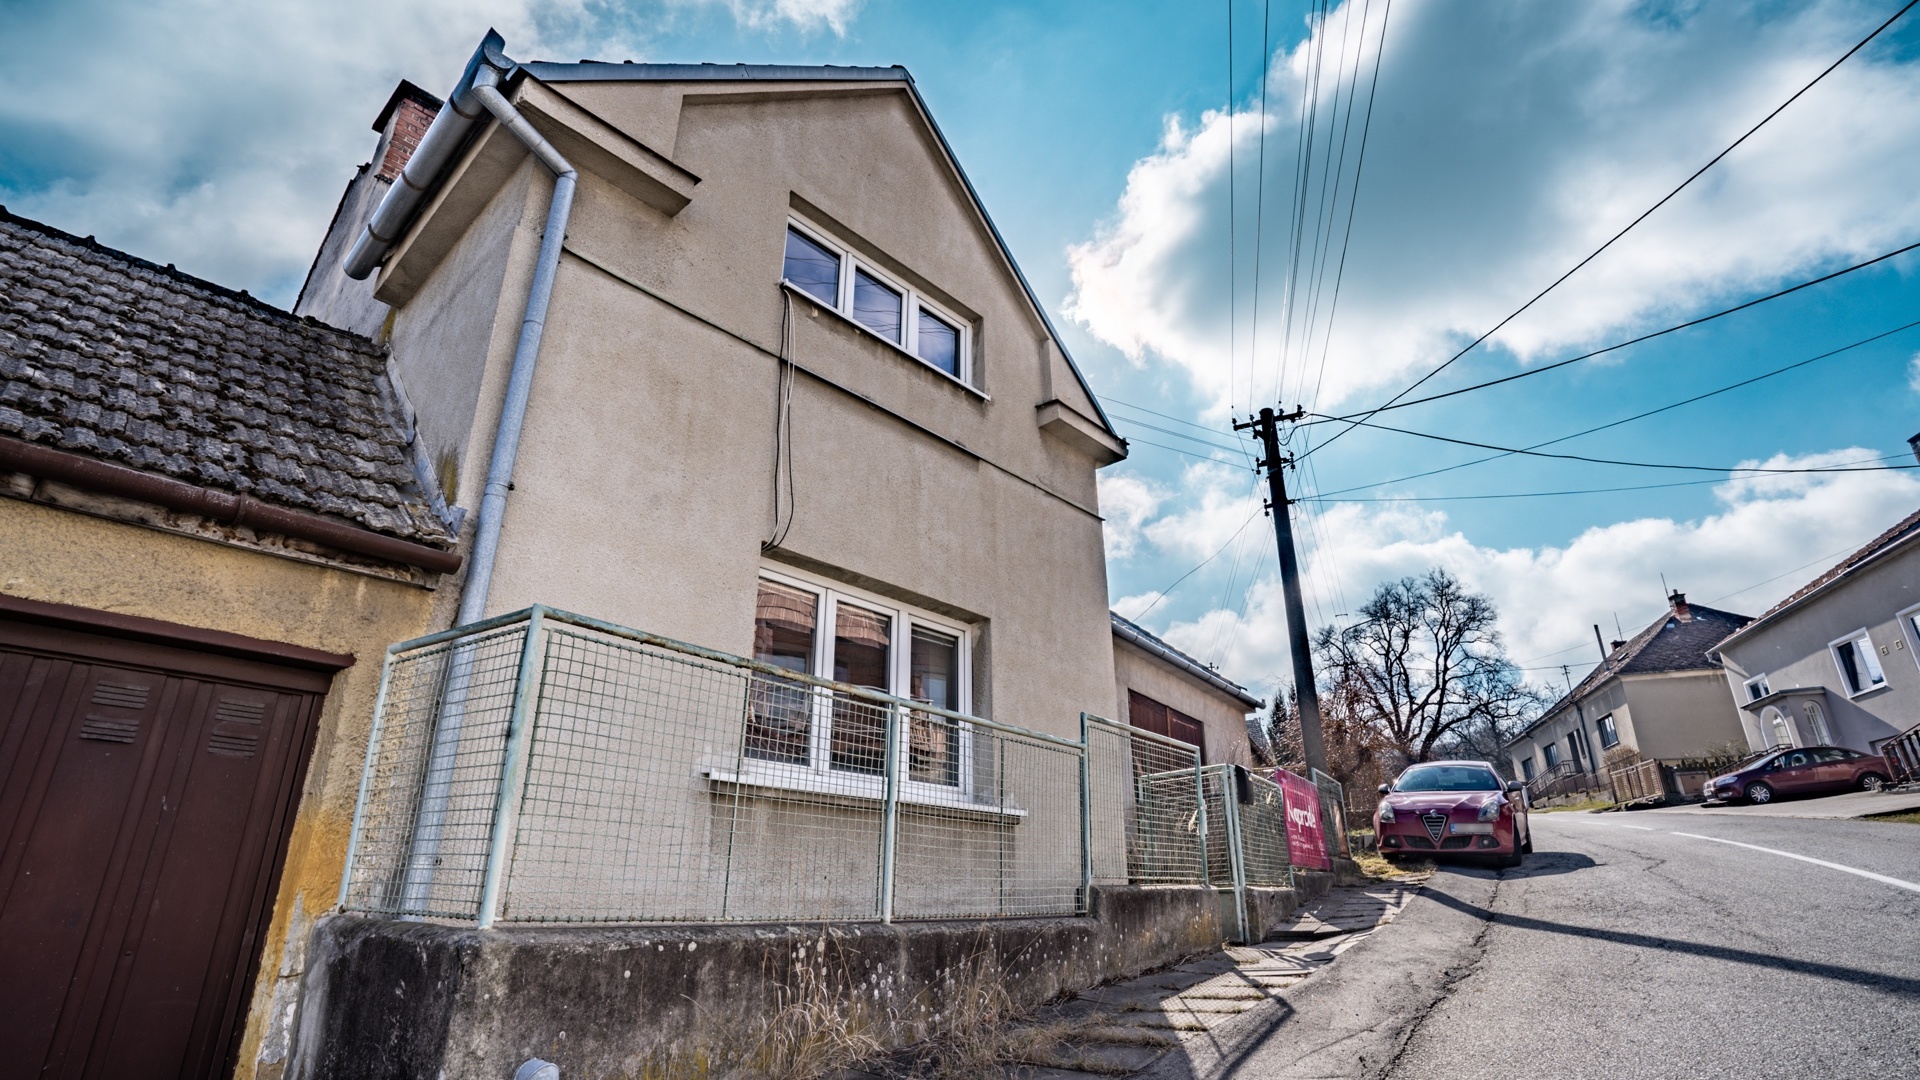 Prodej, Rodinné domy,  402 m² - Šebetov